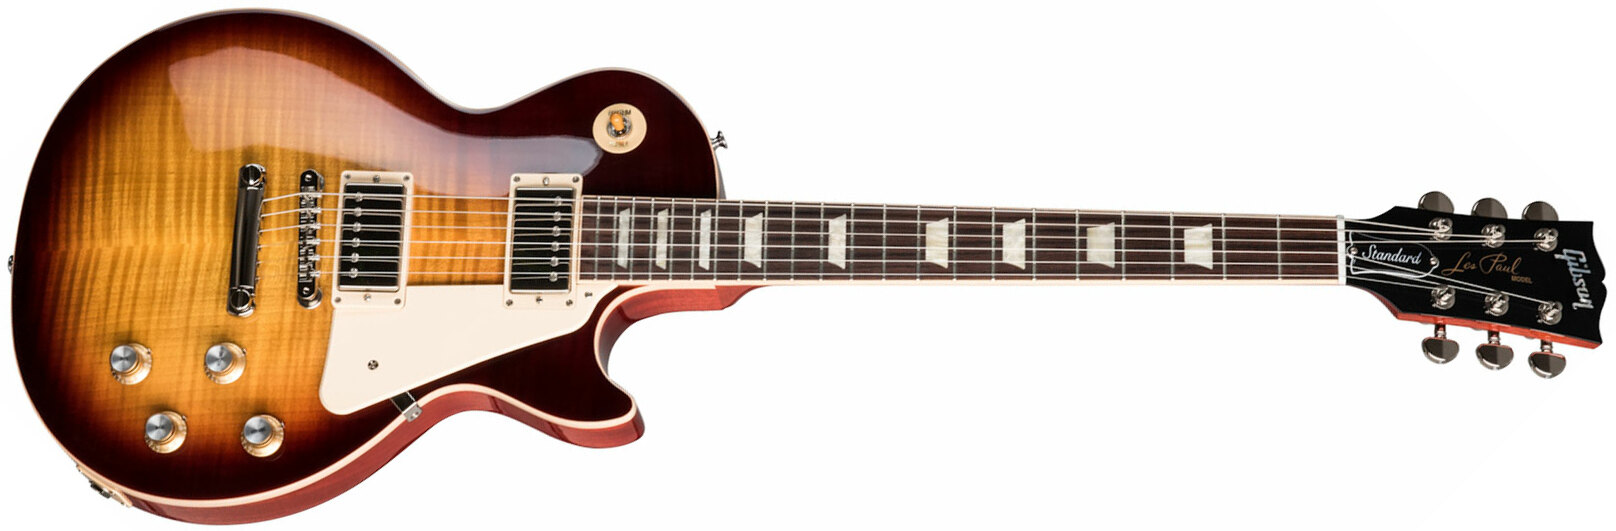 Gibson Les Paul Standard 60s Original 2h Ht Rw - Bourbon Burst - Guitarra eléctrica de corte único. - Main picture